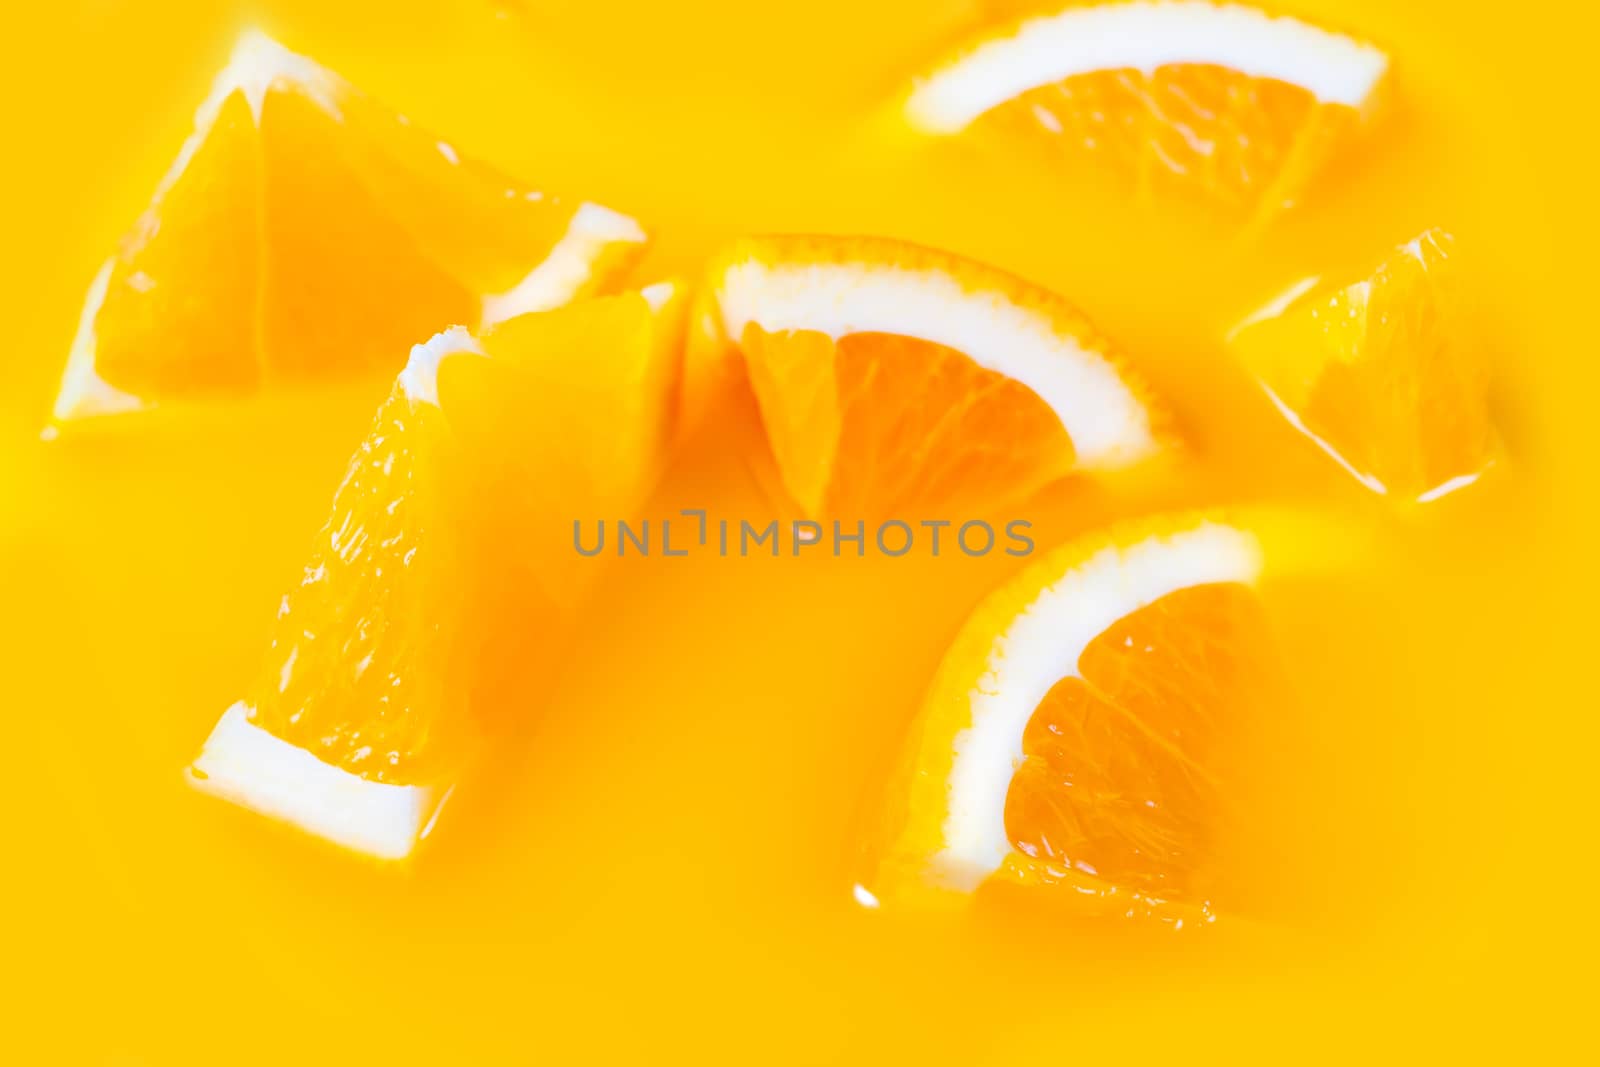 Many fresh a slice of orange on yellow background